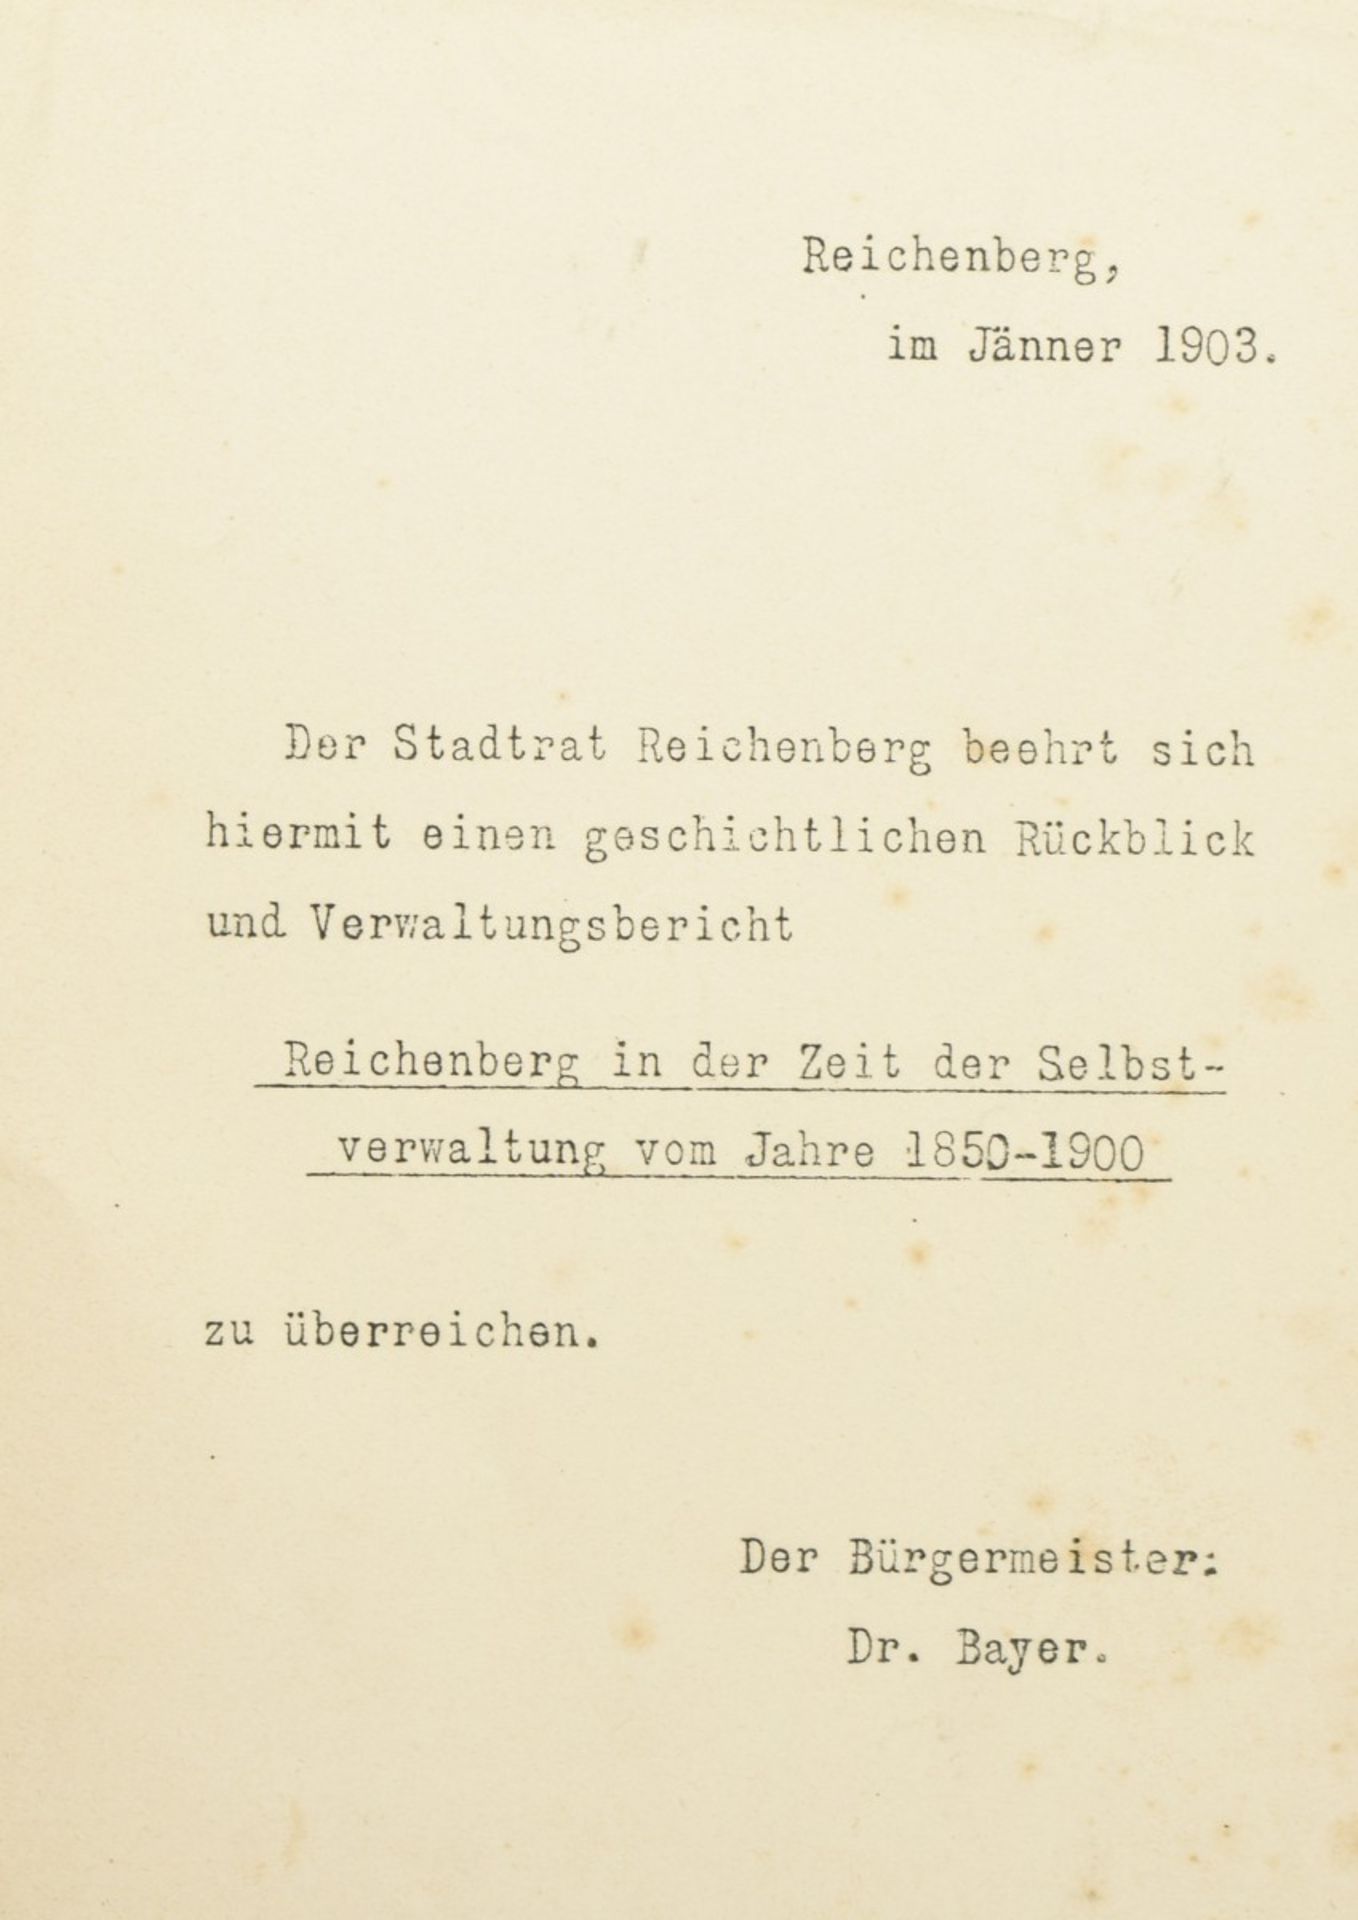 Reichenberg in der Zeit der Selbstverwaltung 1850-1900 - Image 3 of 5